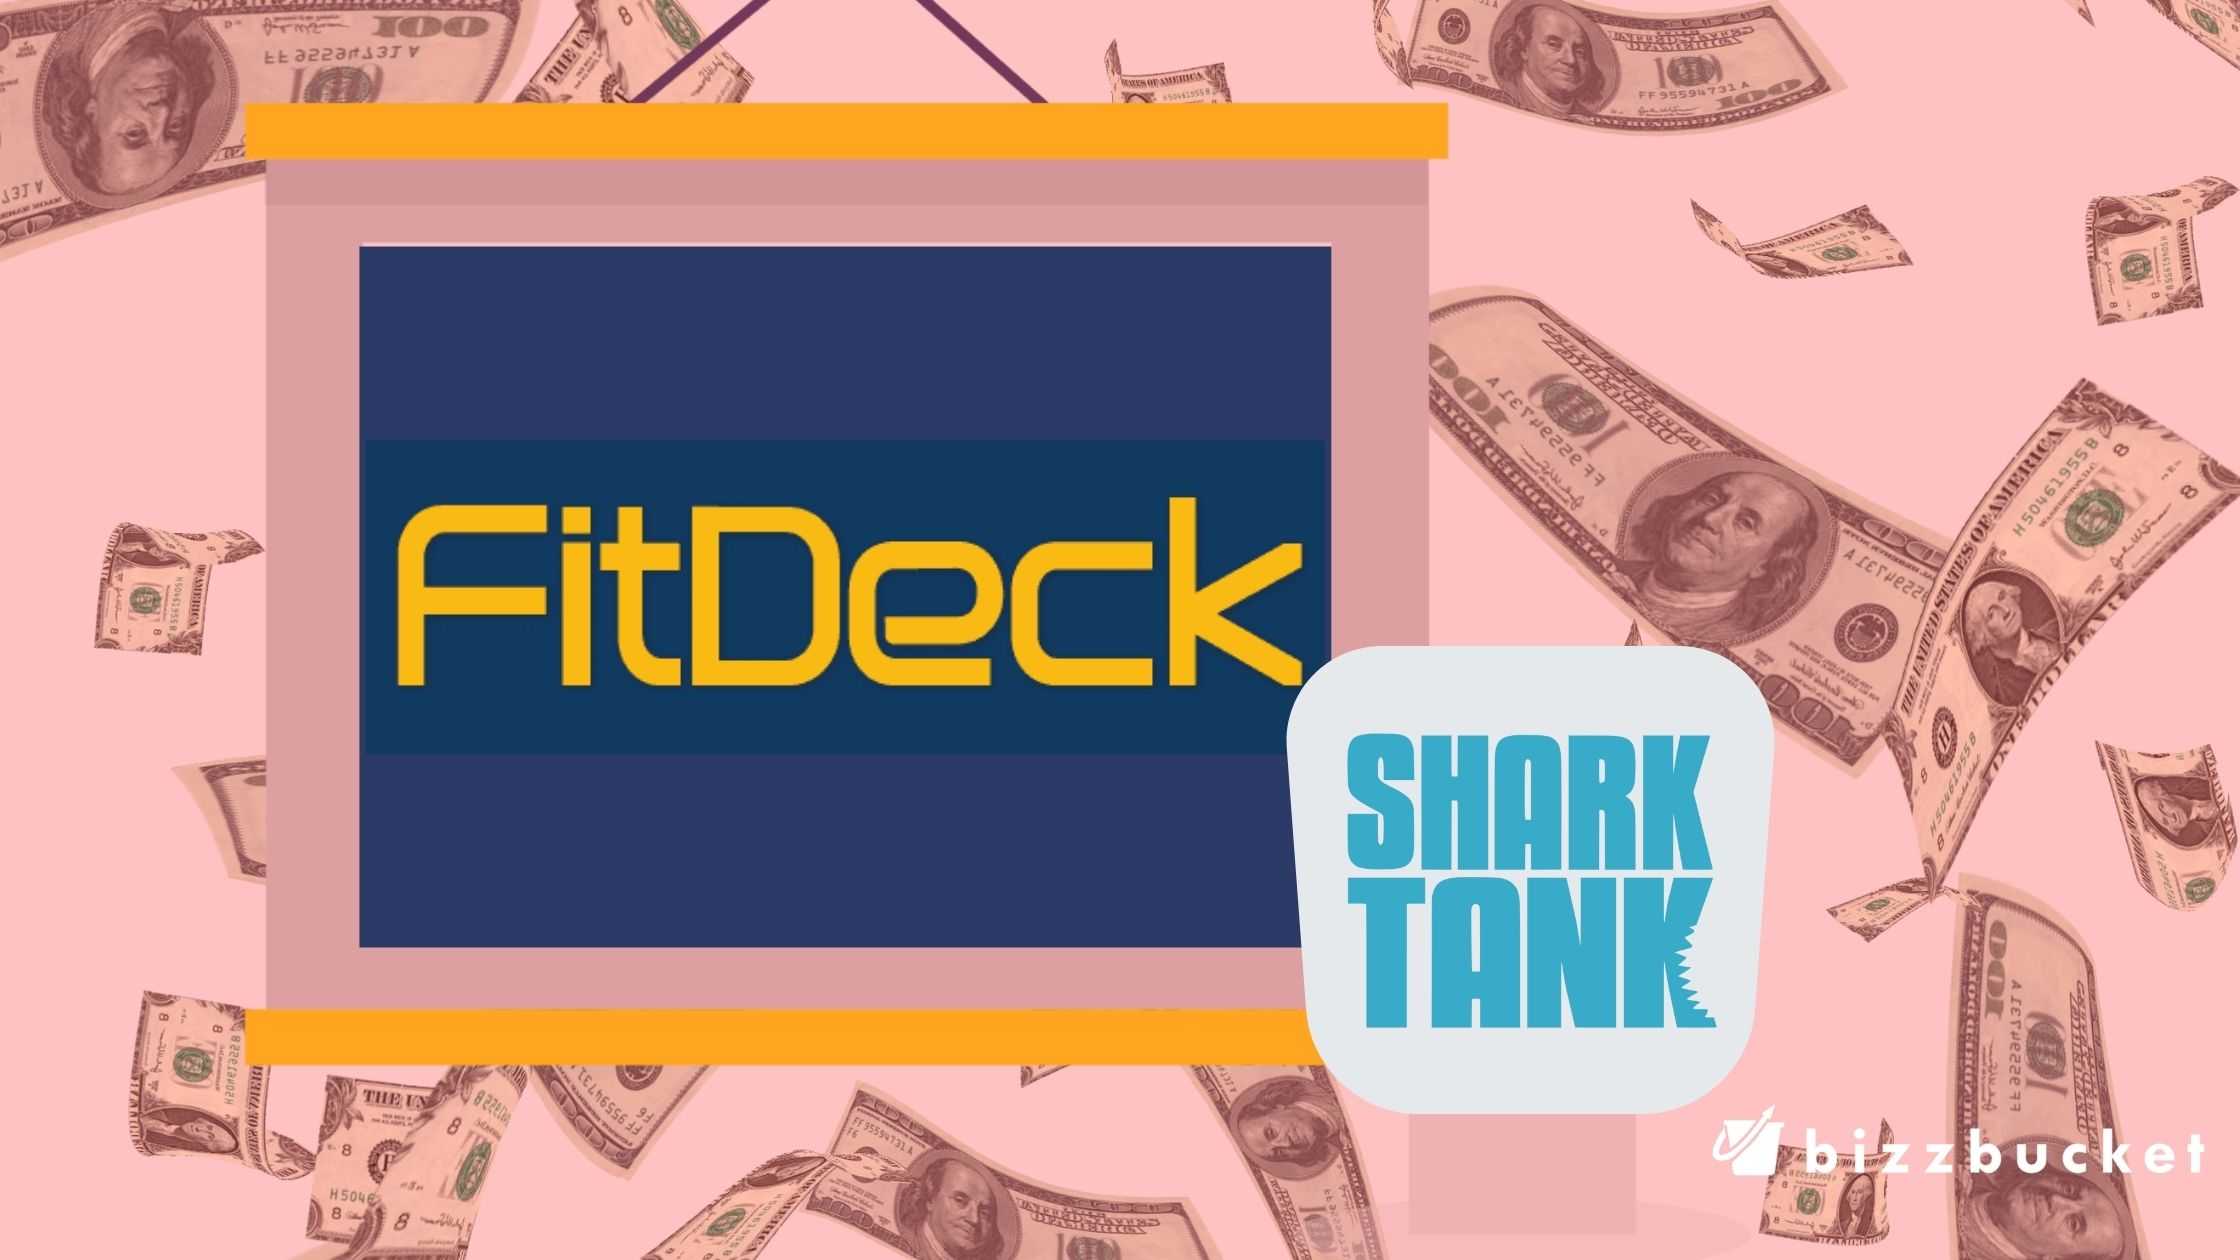 Fit Deck shark tank update